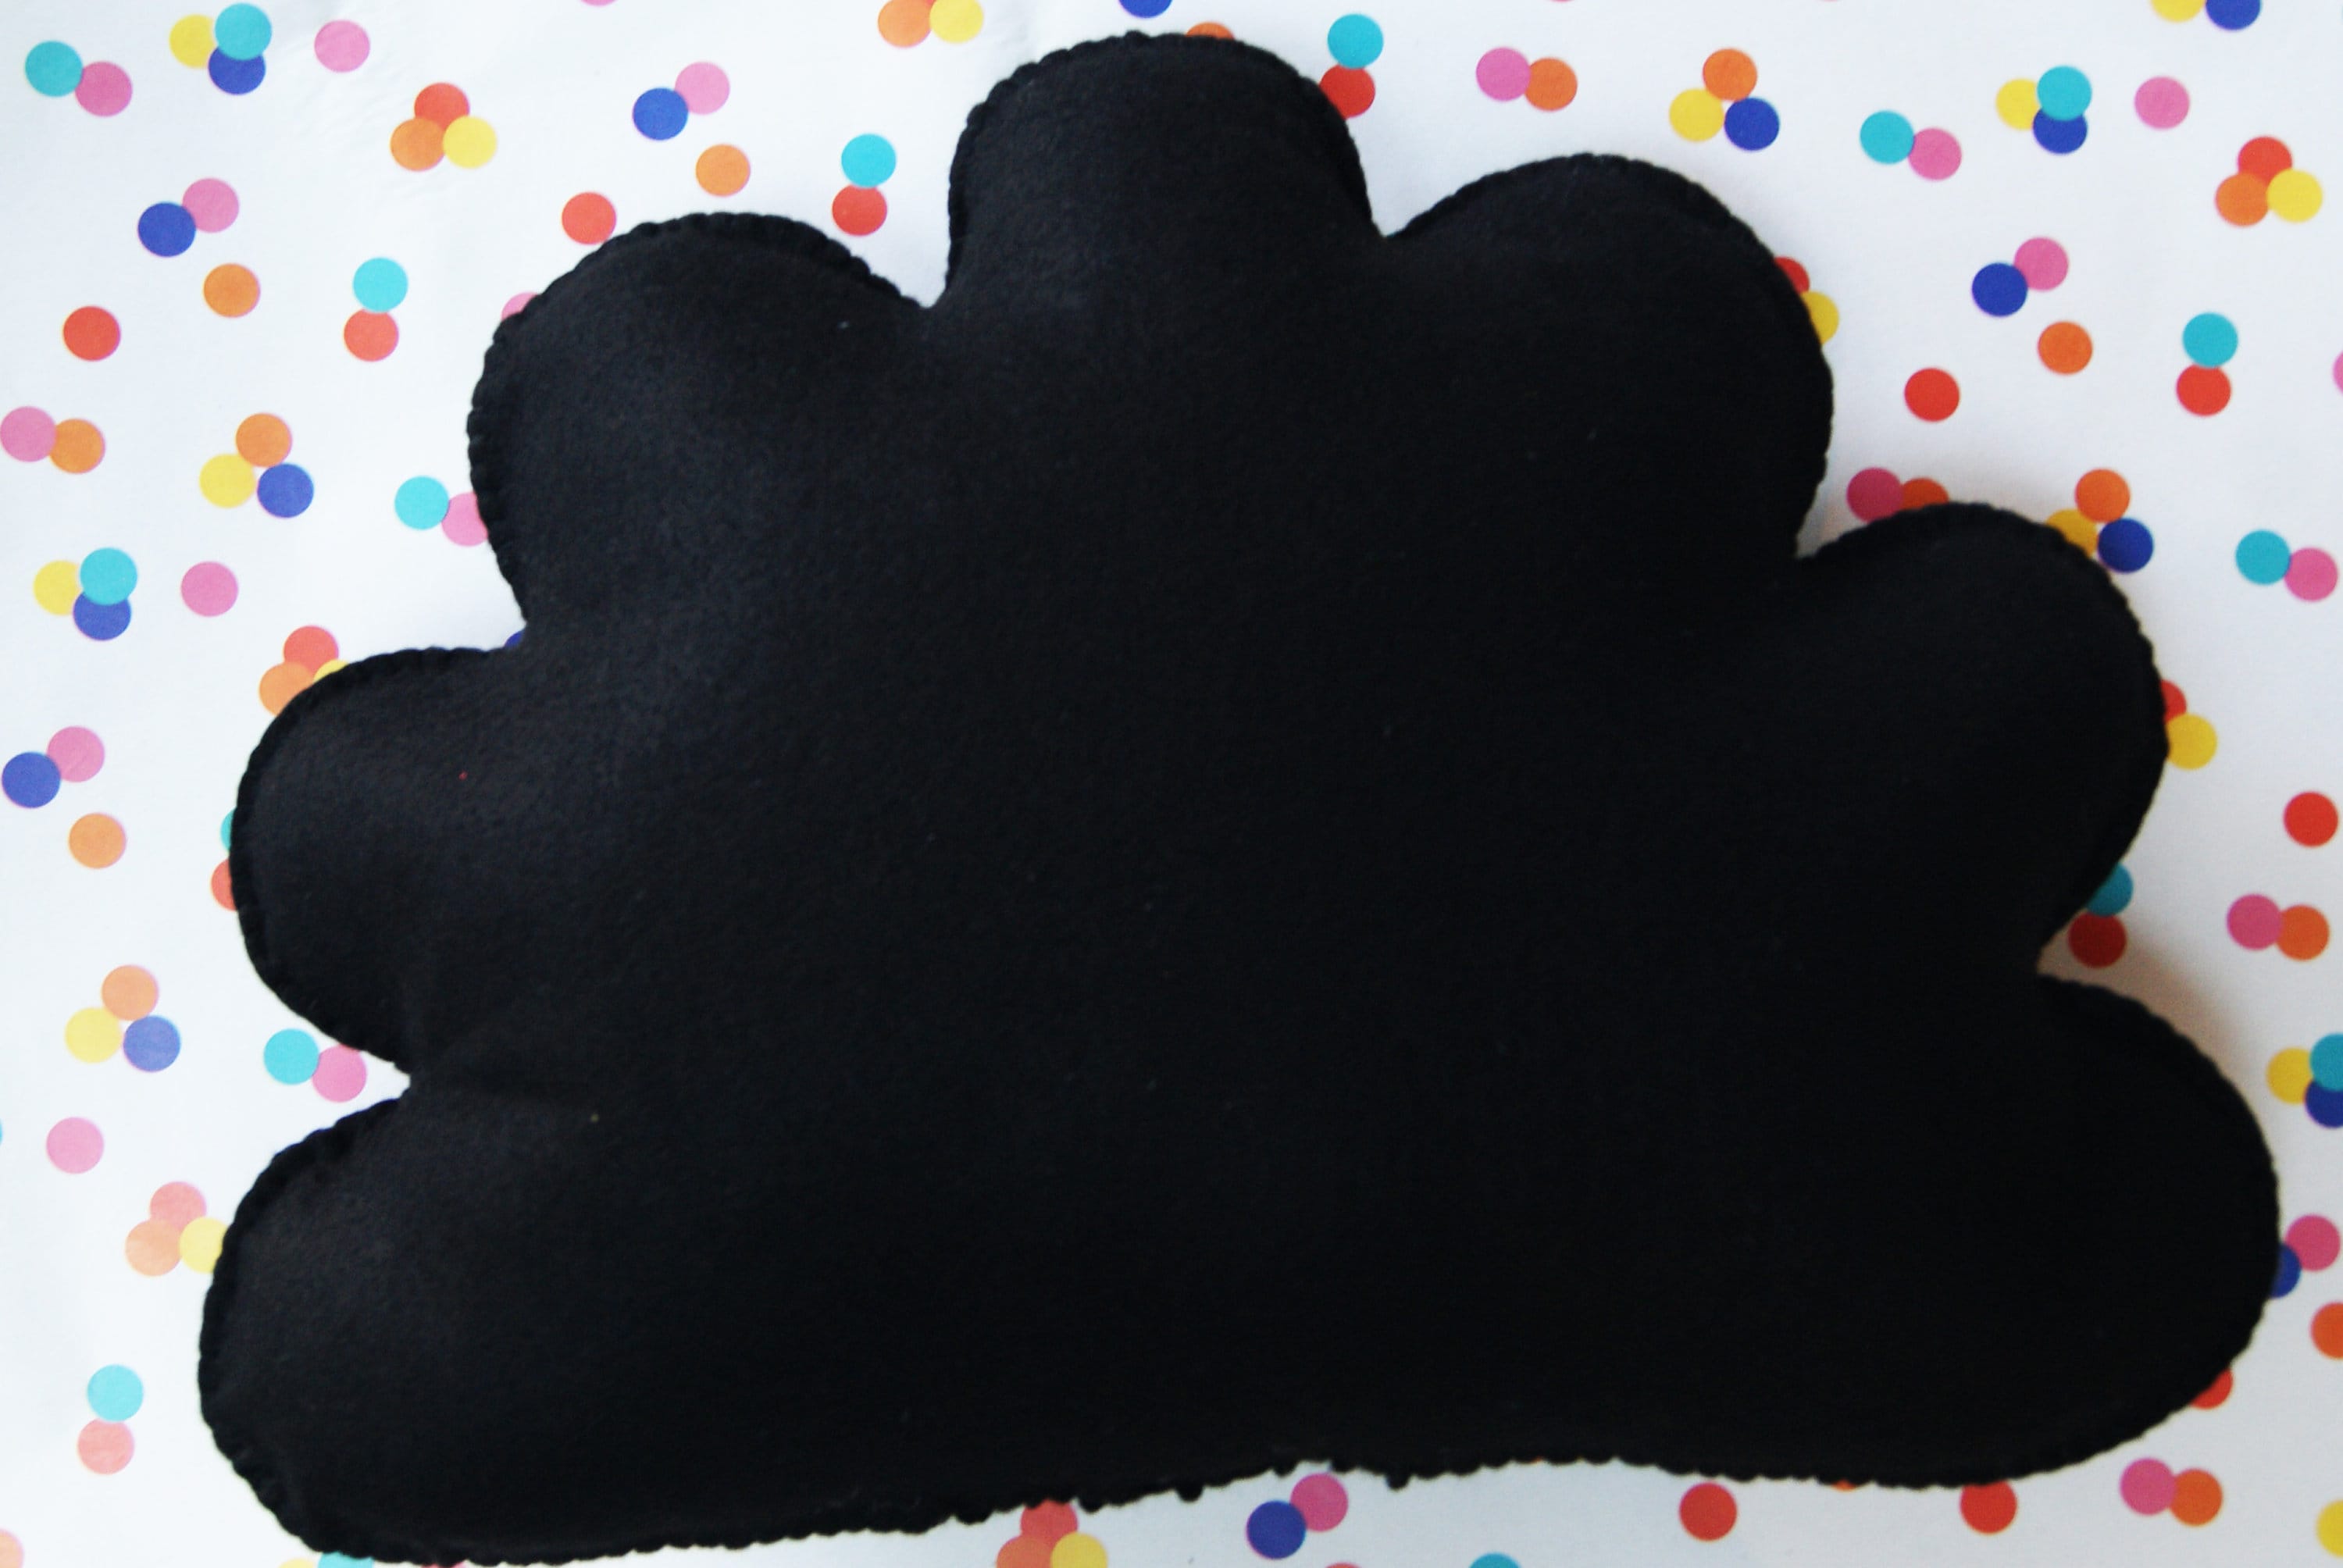 Black Cloud Cushion, Cloud Shape Cushion, Black Cushion, Plush